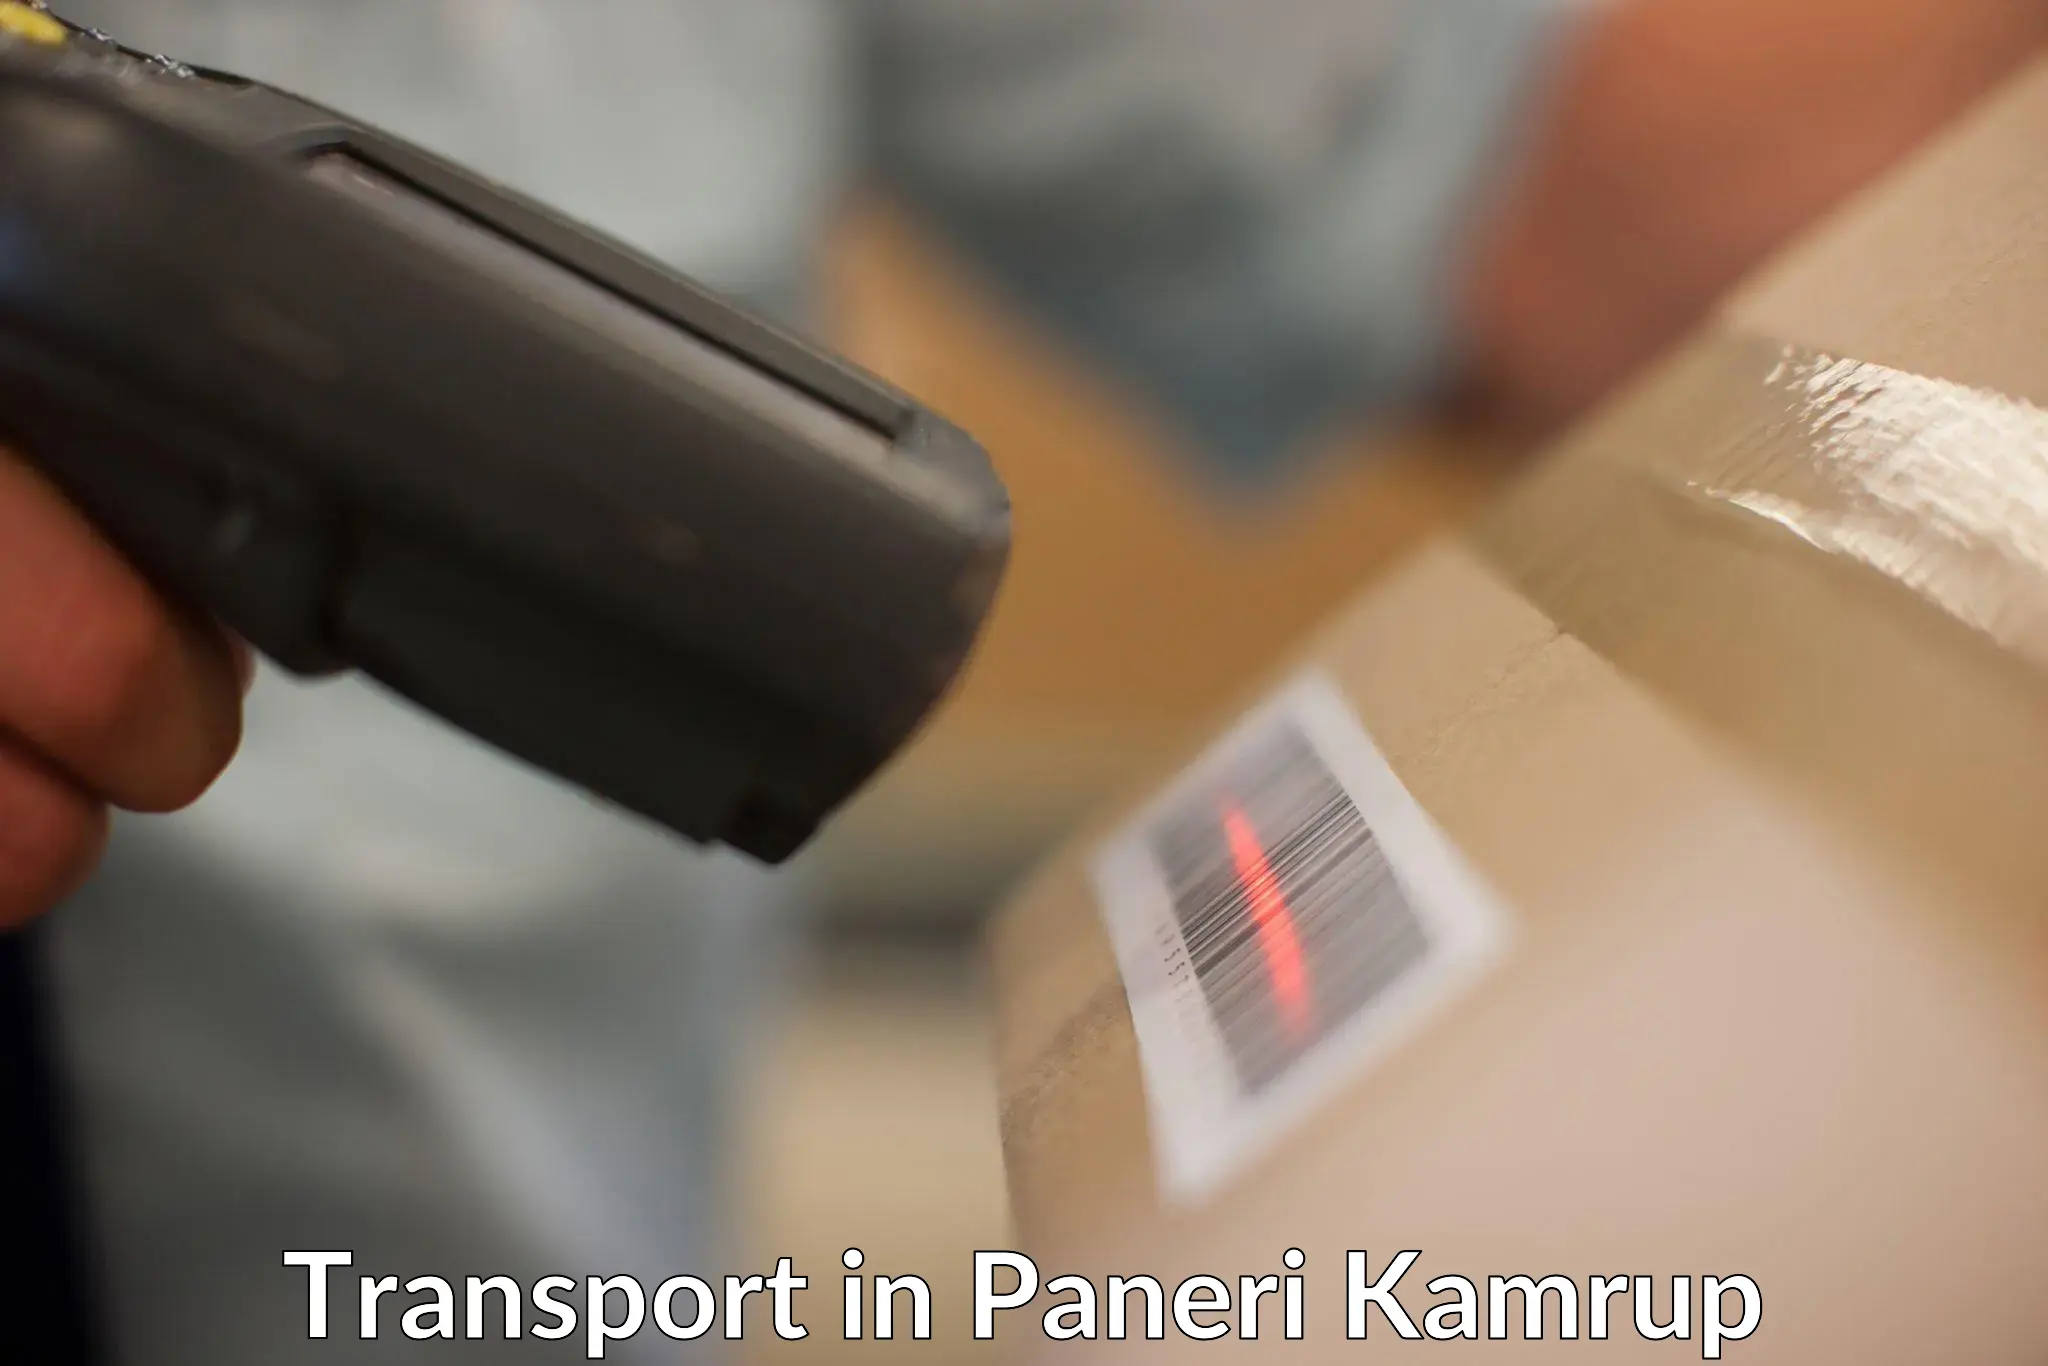 Parcel transport services in Paneri Kamrup